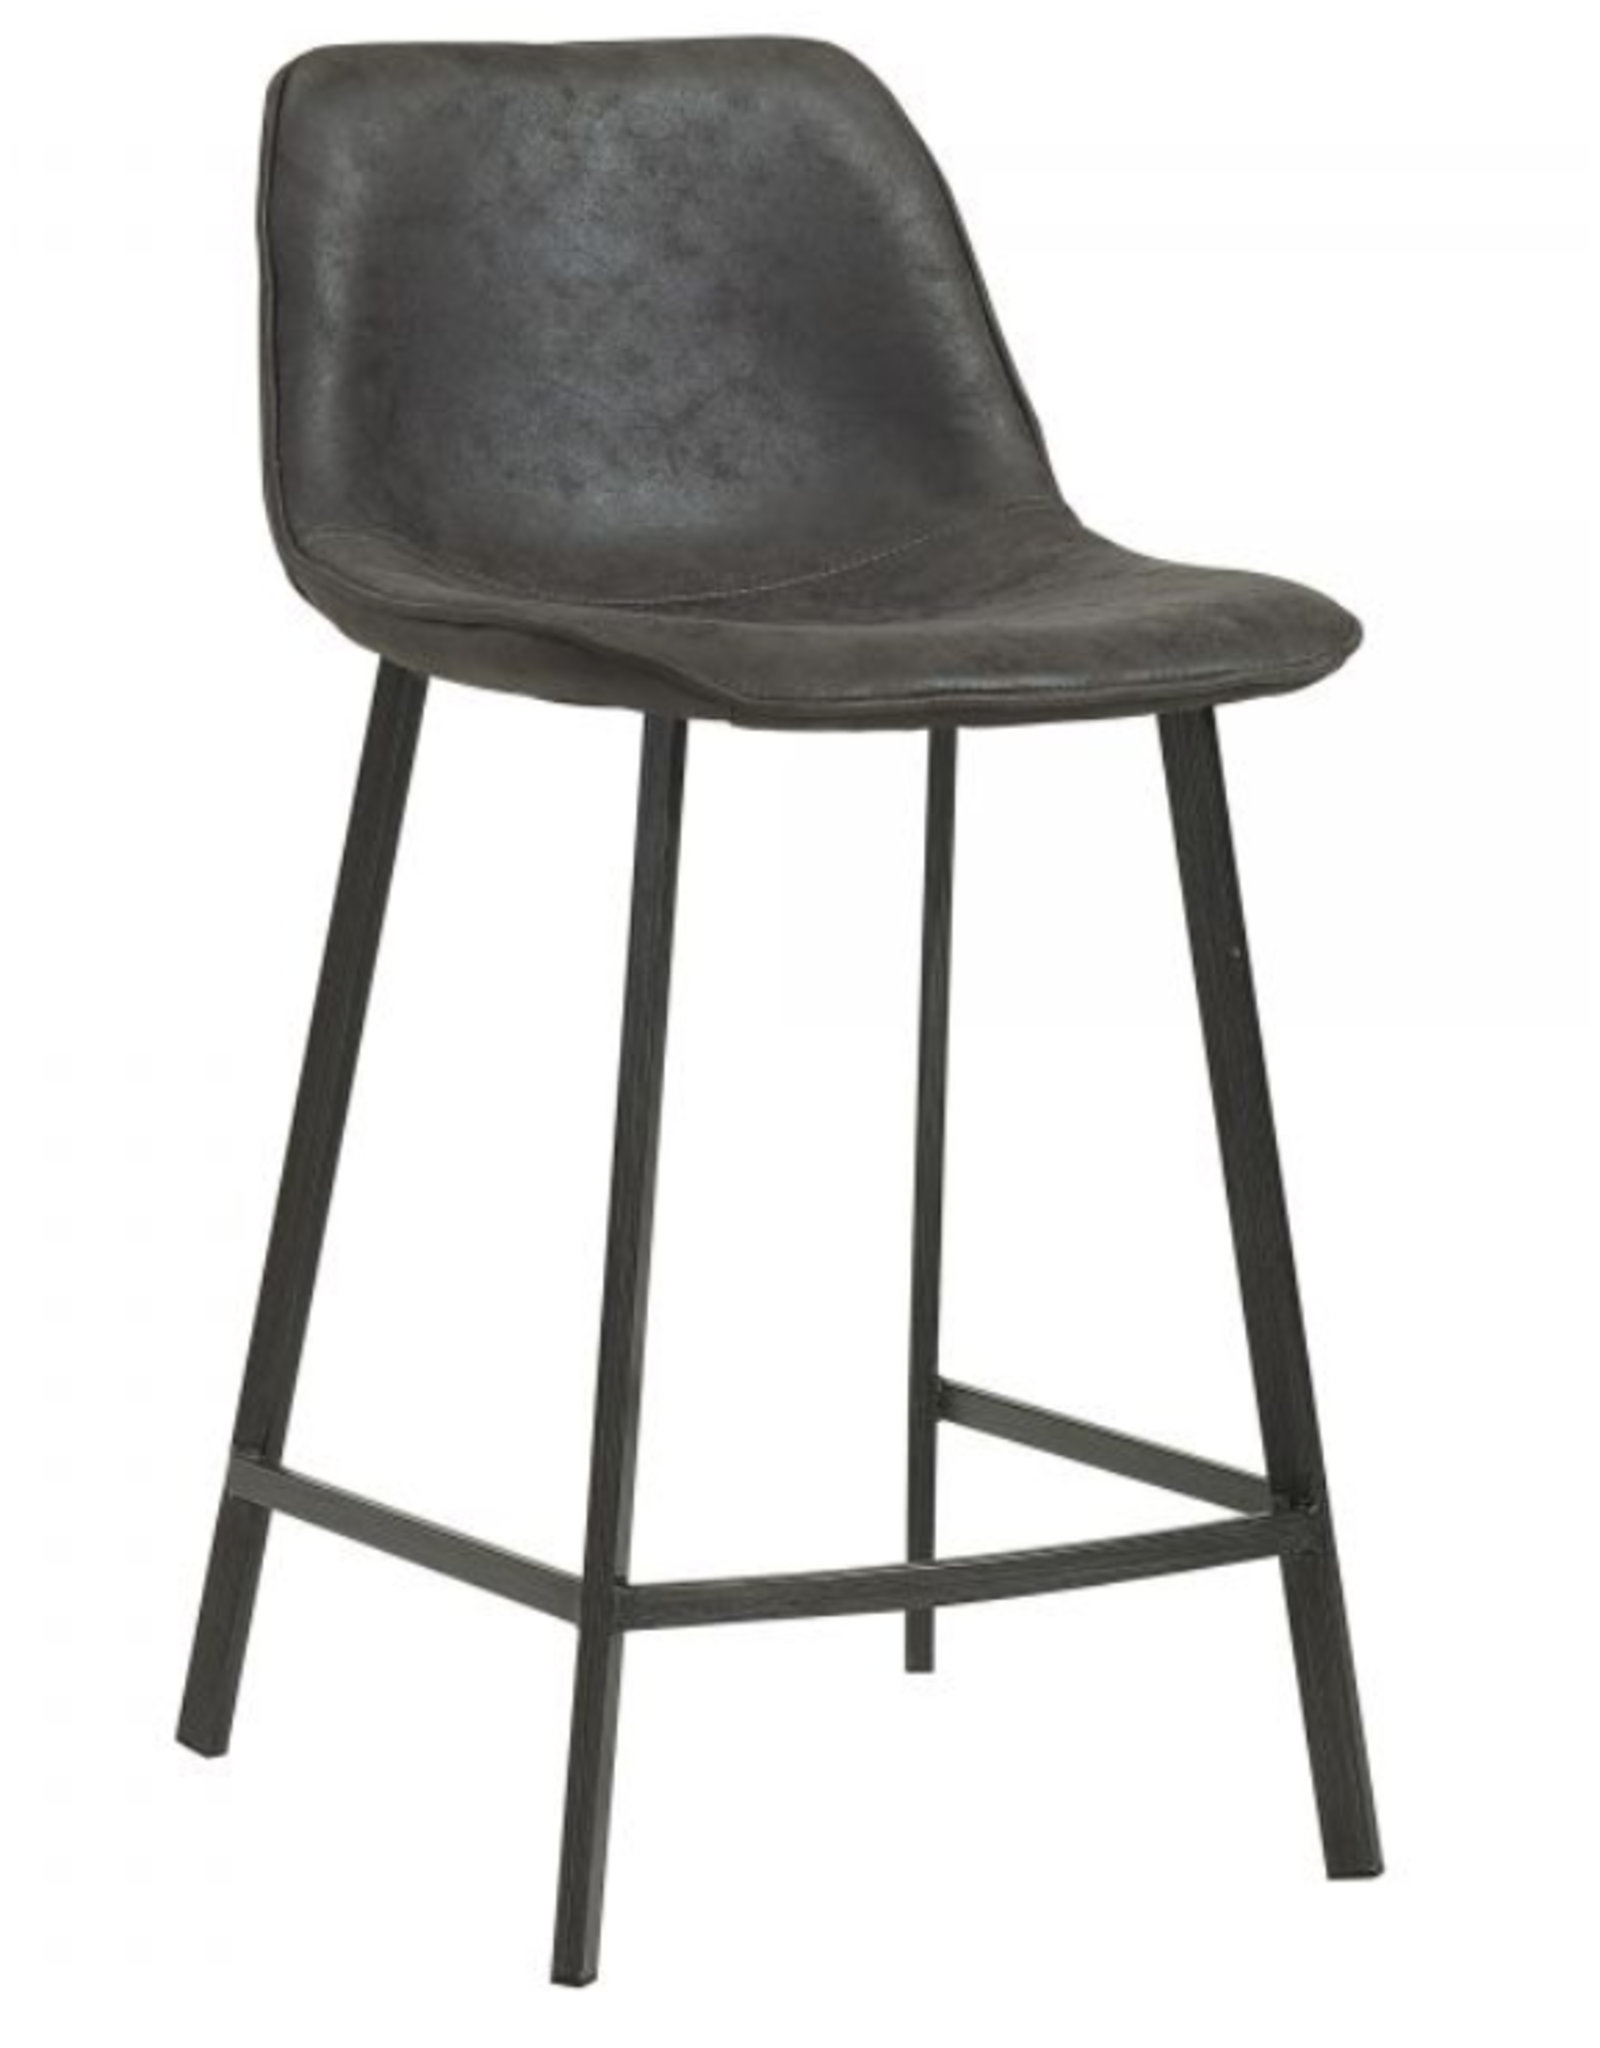 Buren 26" counter stool - Vintage Grey